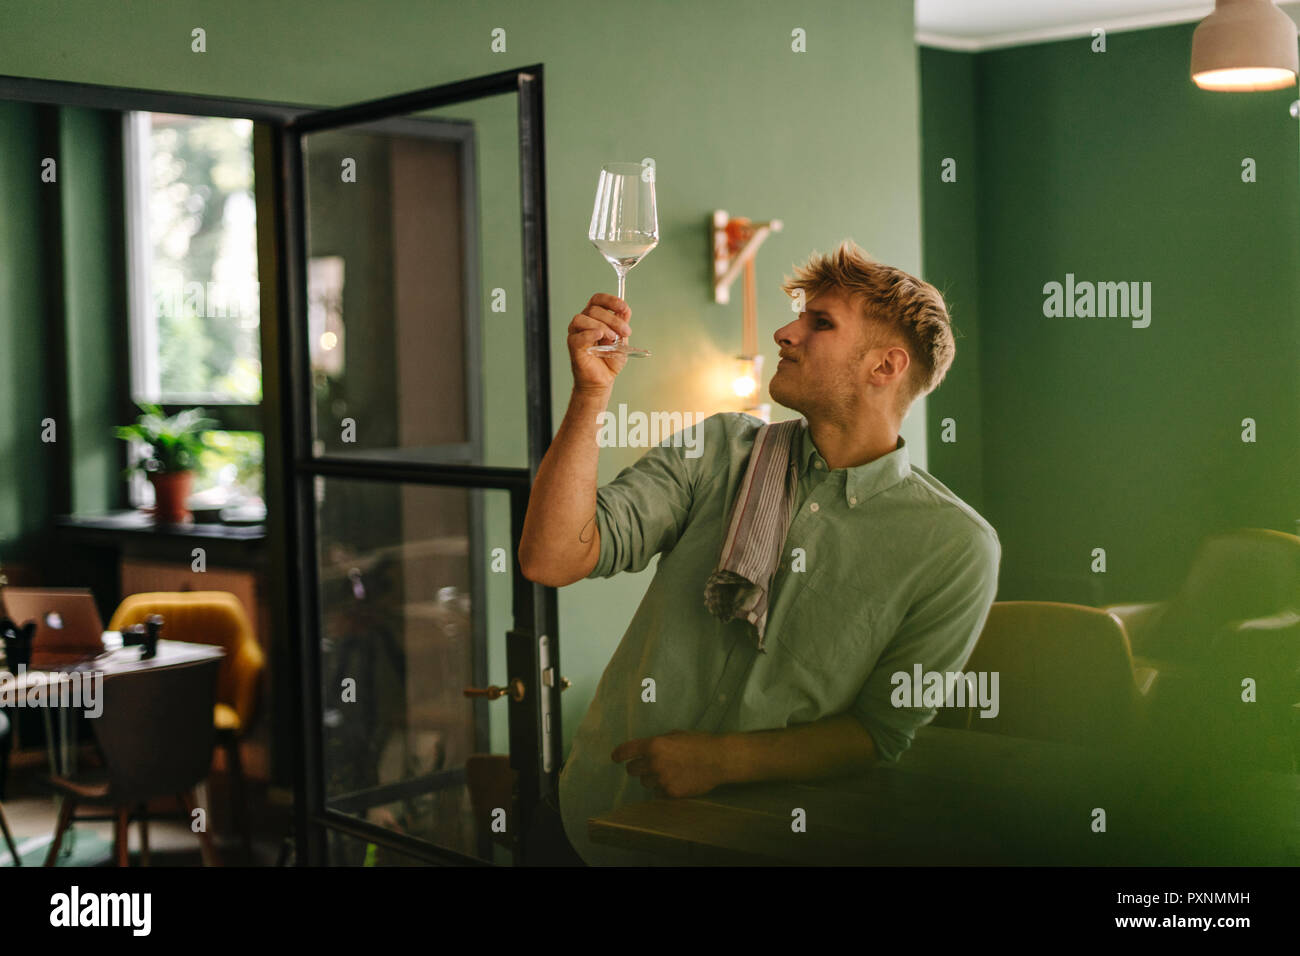 Junge Unternehmer prüfen Wein Glas in seinem Restaurant Stockfoto